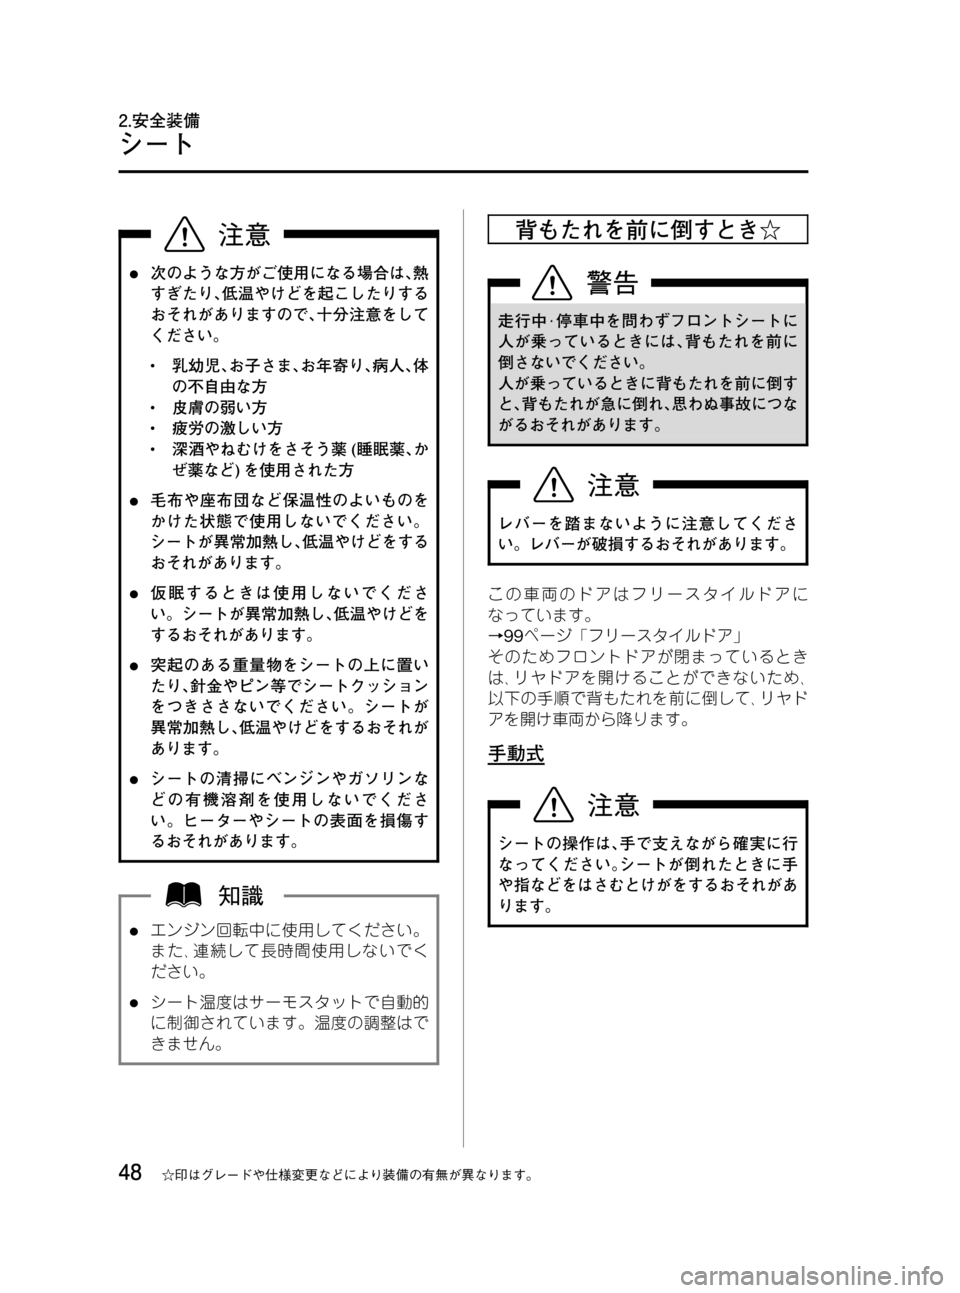 MAZDA MODEL RX 8 2008  取扱説明書 (in Japanese) Black plate (48,1)
l次のような方がご使用になる場合は､熱
すぎたり､低温やけどを起こしたりする
おそれがありますので､十分注意をして
ください。